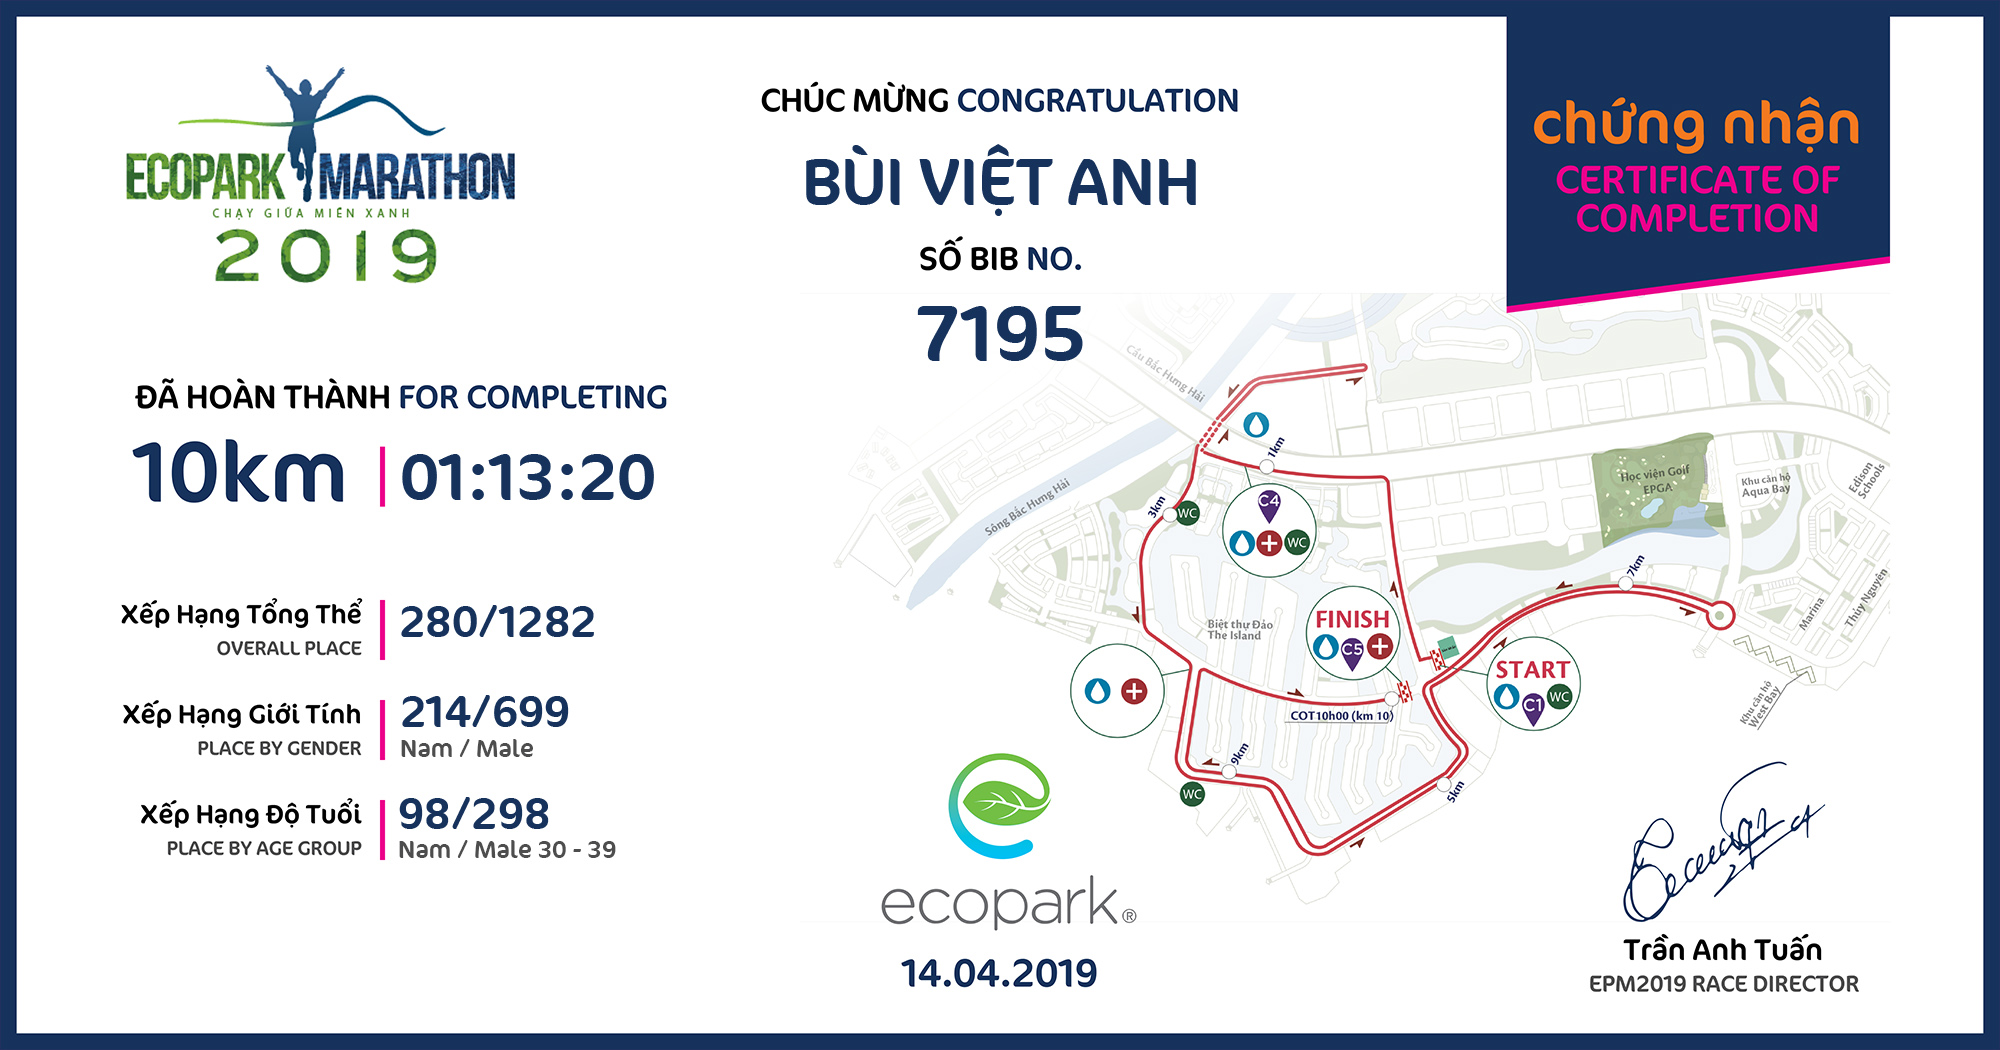 7195 - Bùi Việt Anh